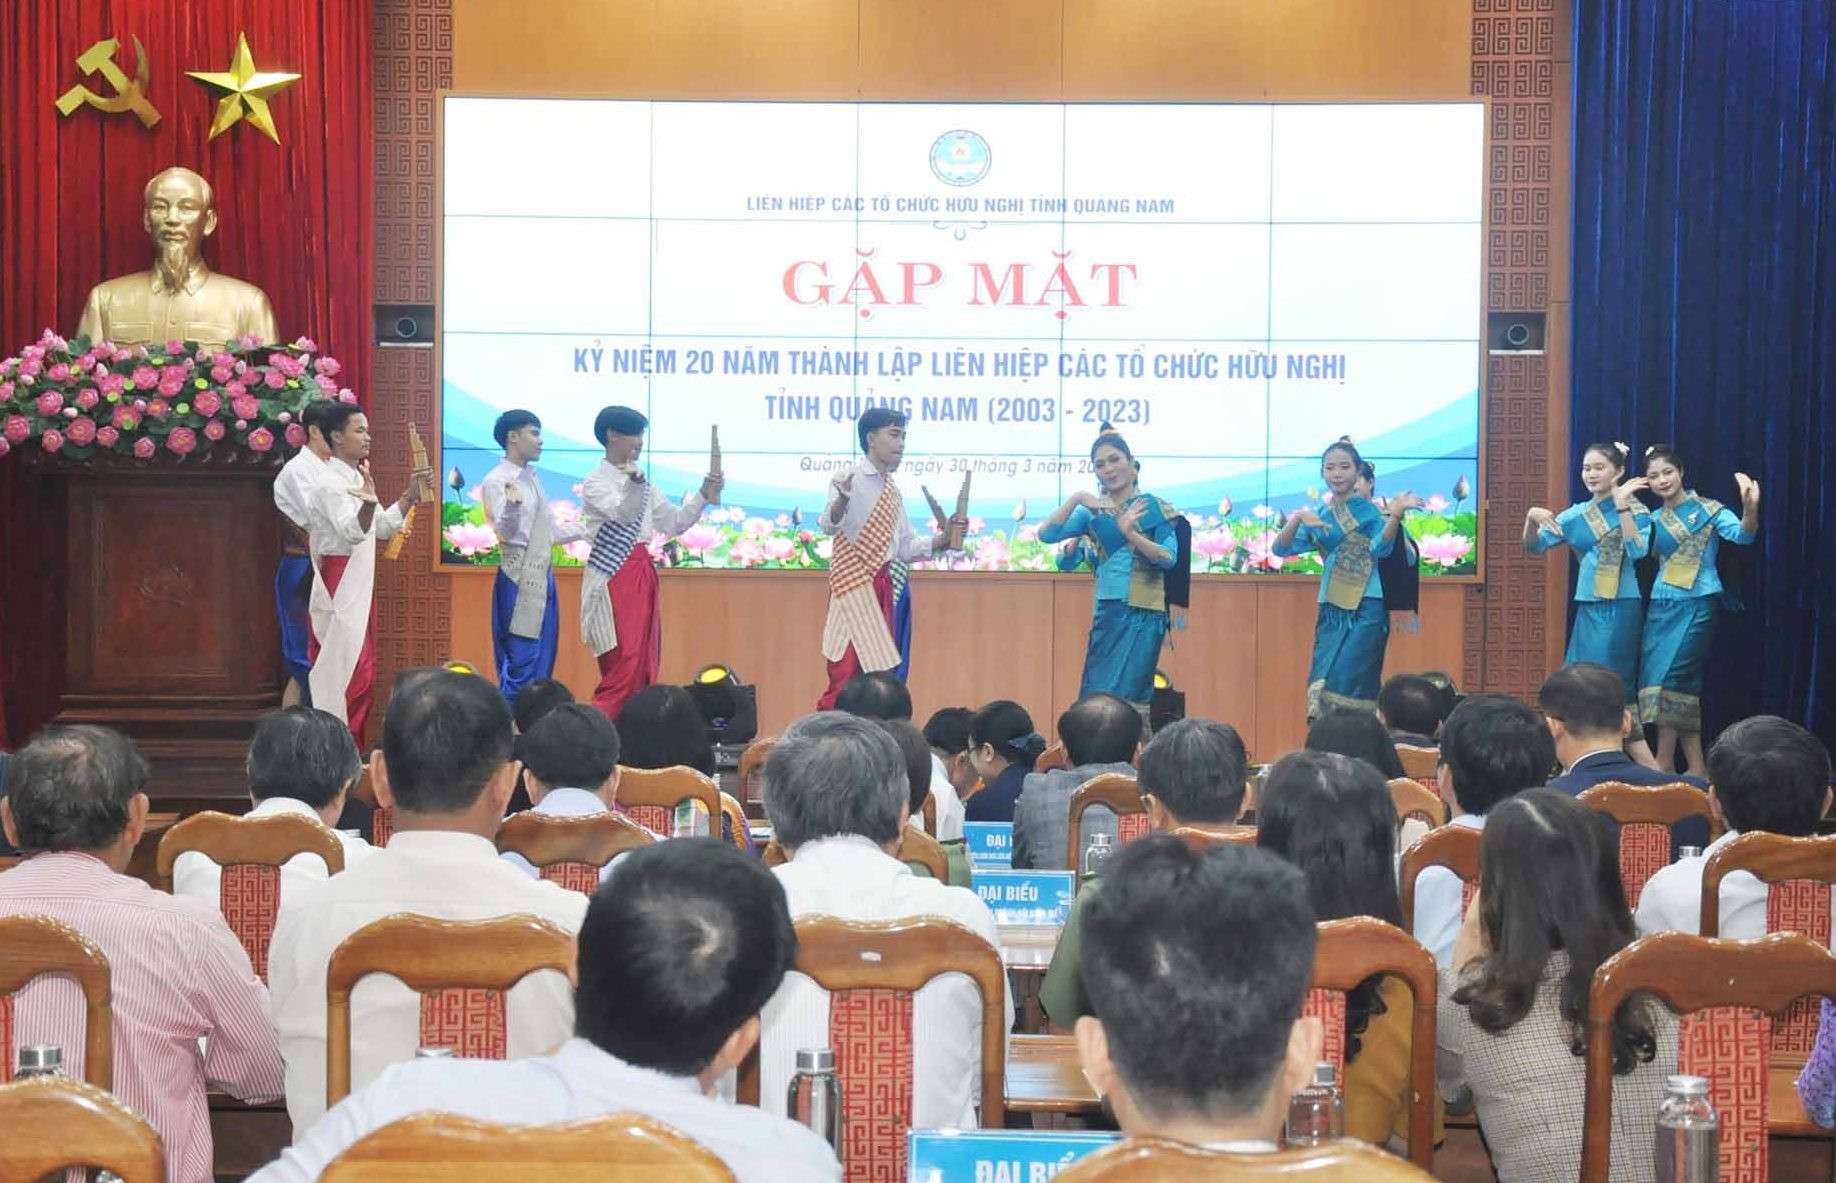 Các sinh viên Lào đang theo học tại Quảng Nam trình bày tiết mục văn nghệ chào mừng gặp mặt kỷ niệm 20 năm thành lập Liên hiệp Các tổ chức hữu nghị tỉnh. Ảnh: N.Đ